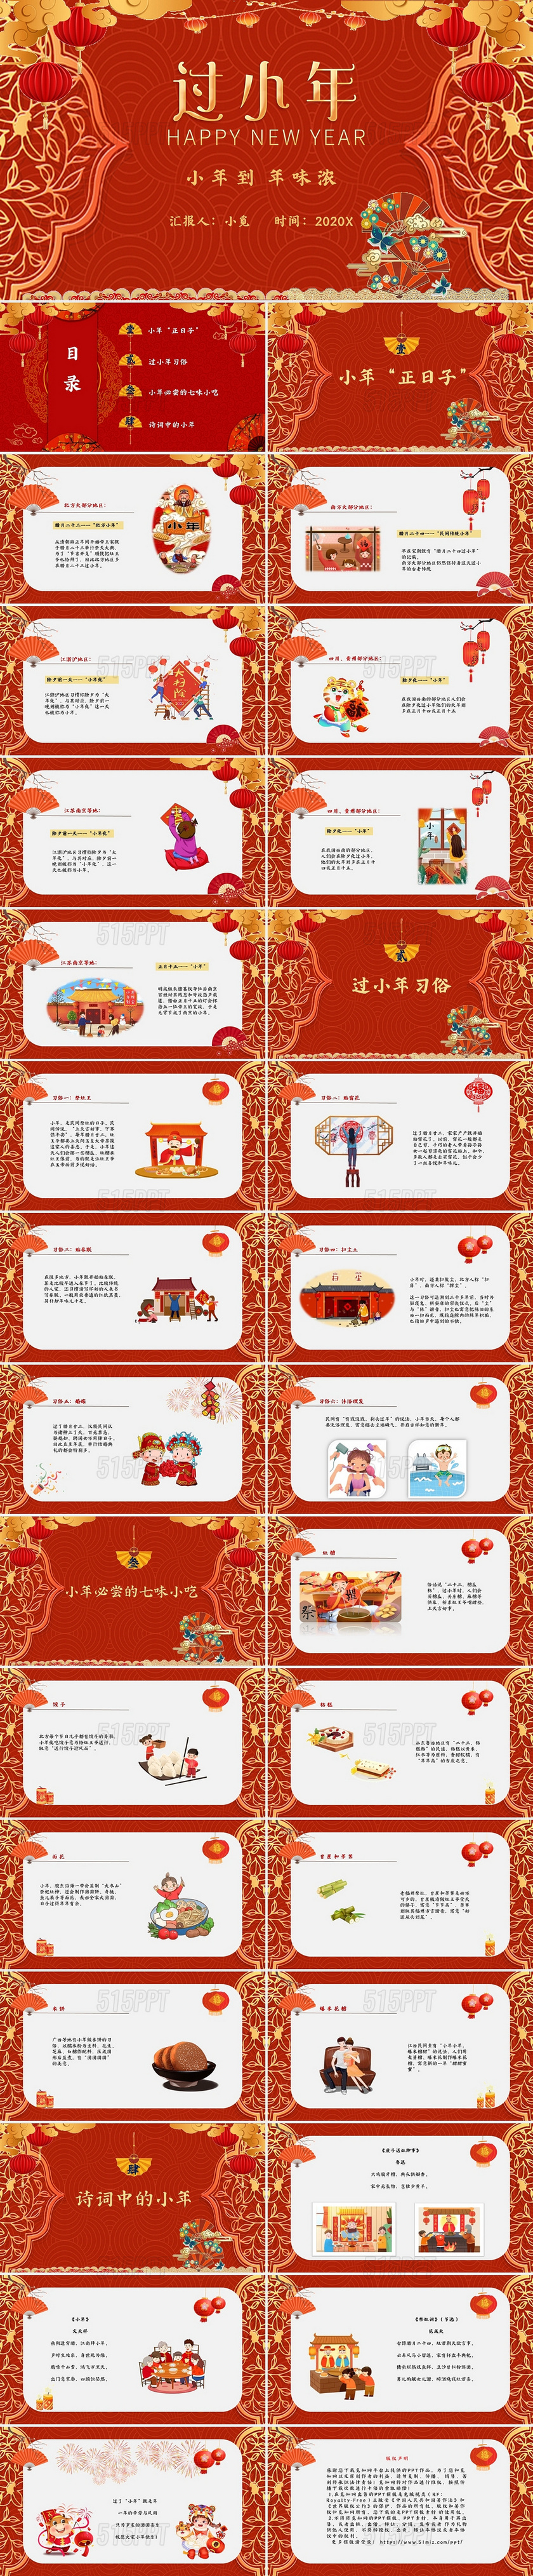 红色中国风格卡通新年节日过小年庆典PPT